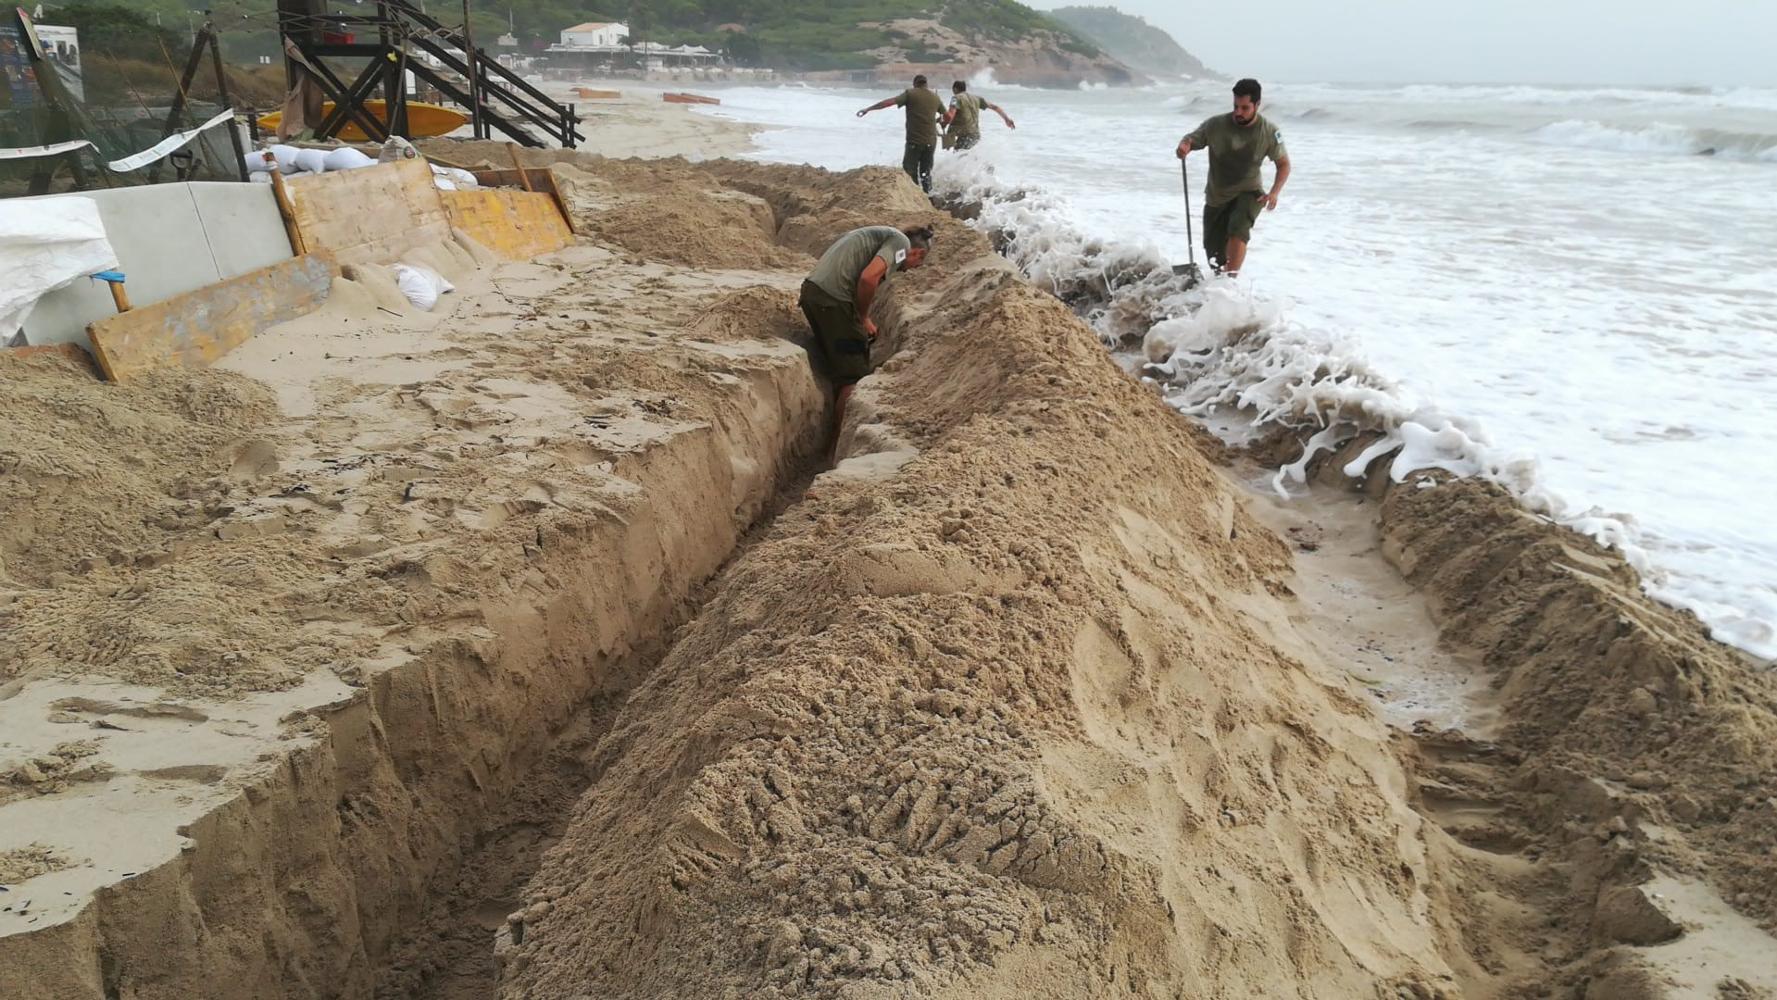 Retirat el darrer niu de tortuga marina de la platja d'Es Cavallet a causa del temporal a Eivissa